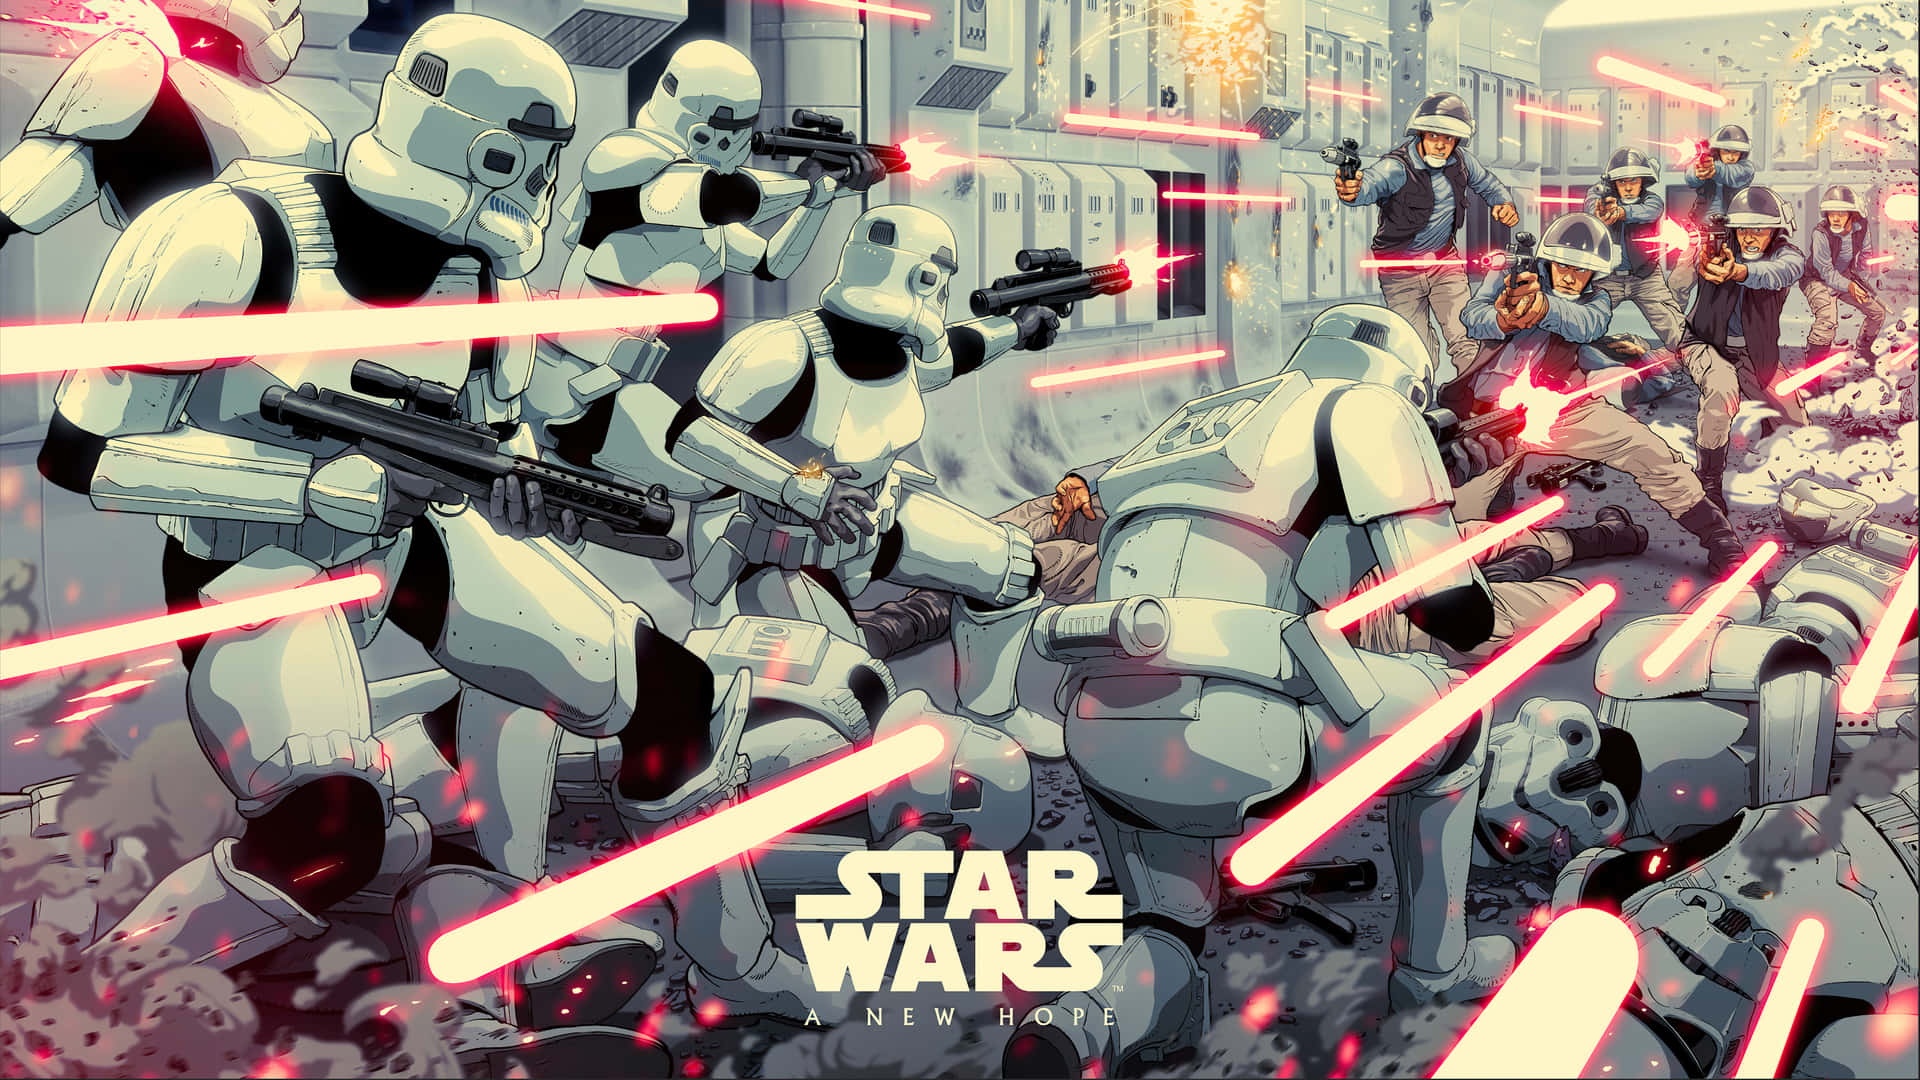 Foren det Galaktiske imperium med et Star Wars-design. Wallpaper